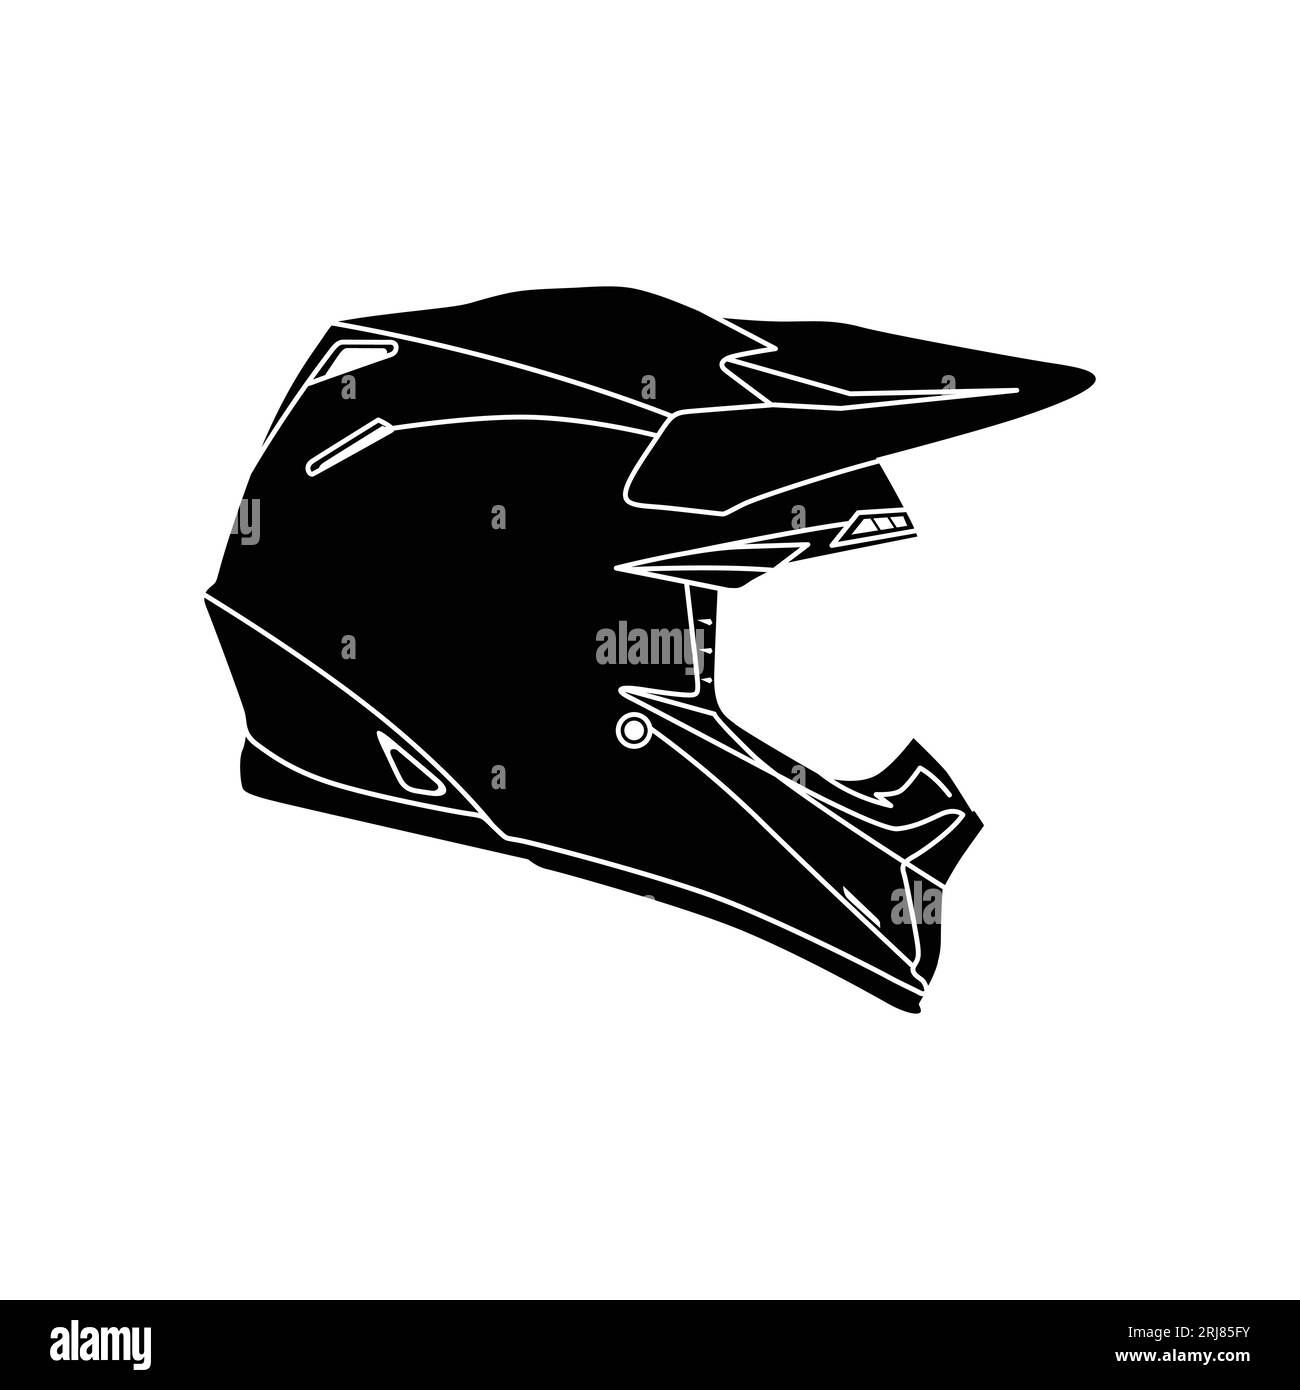 Motocross-Helm Silhouette Vector, Motocross-Rallye-Helm, Seitenansicht Stock Vektor